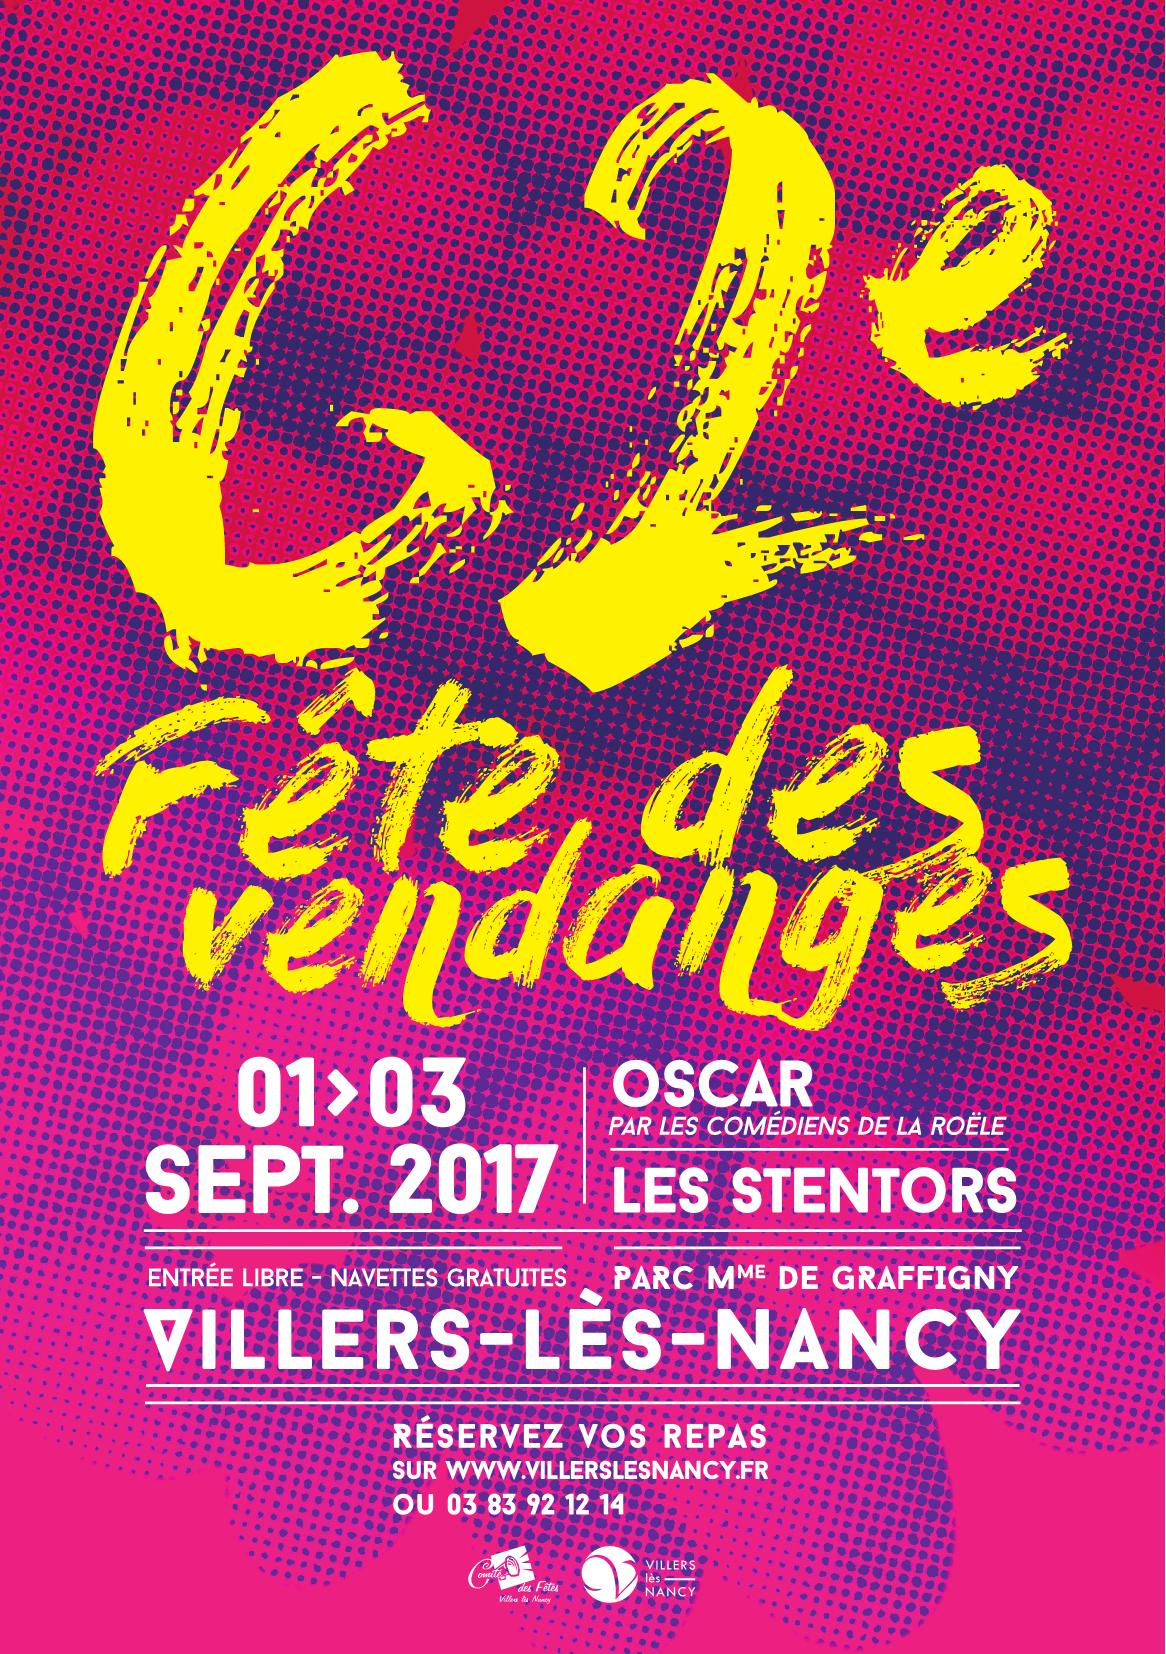 Fete des Vendanges 2017 Villers-ls-Nancy